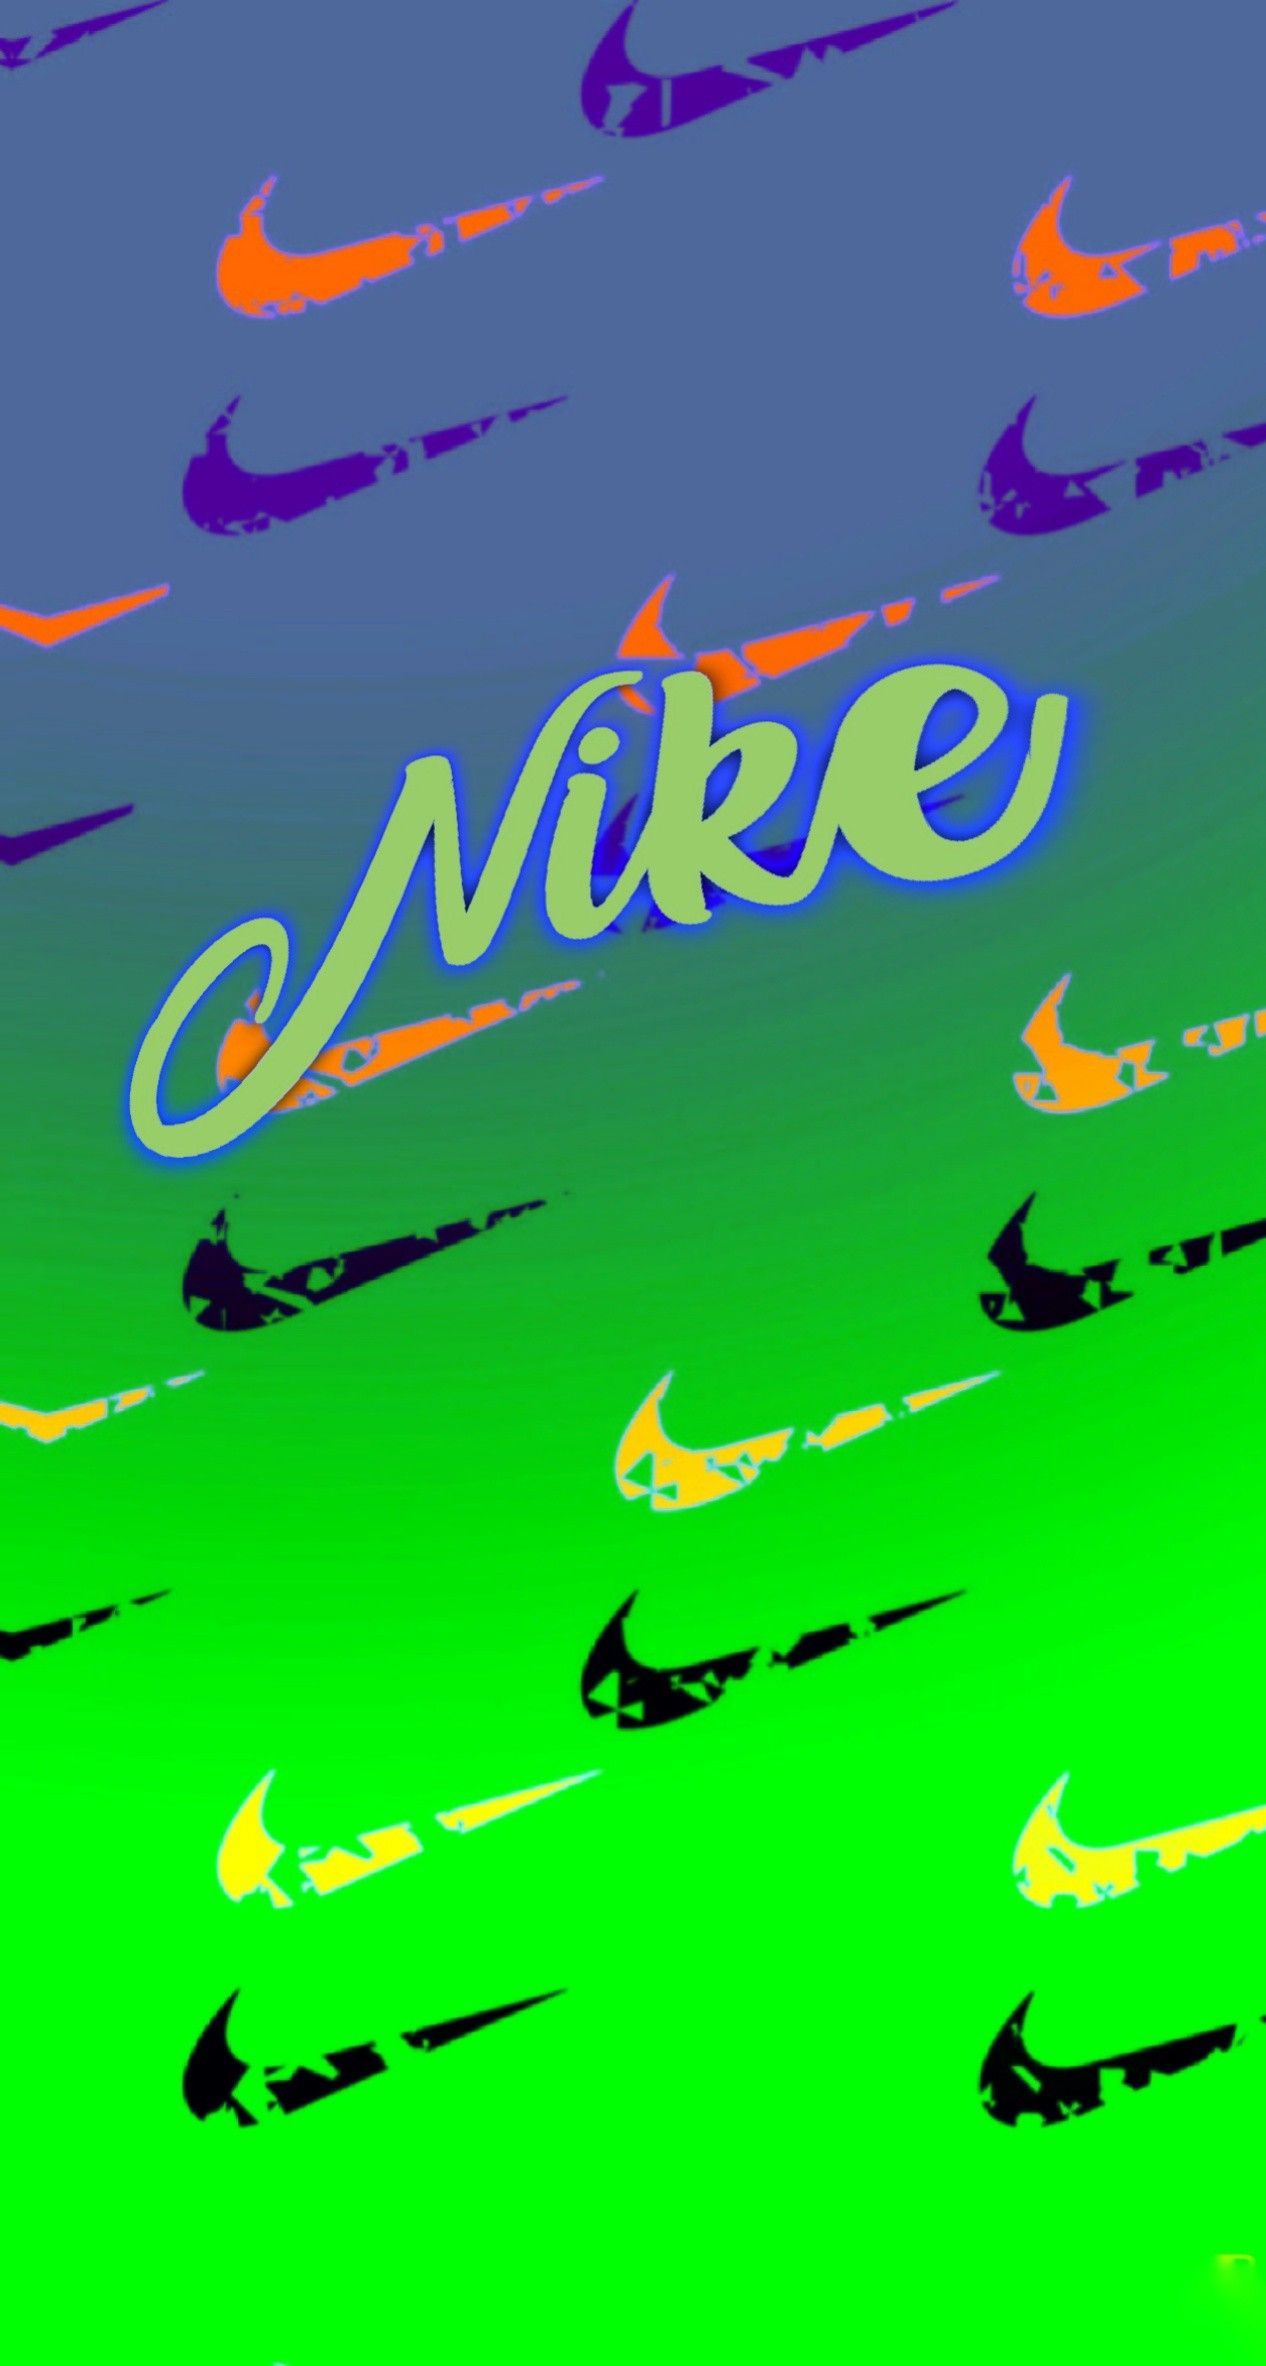 Nike wallpaper. Nike wallpaper, Camo wallpaper, Wallpaper